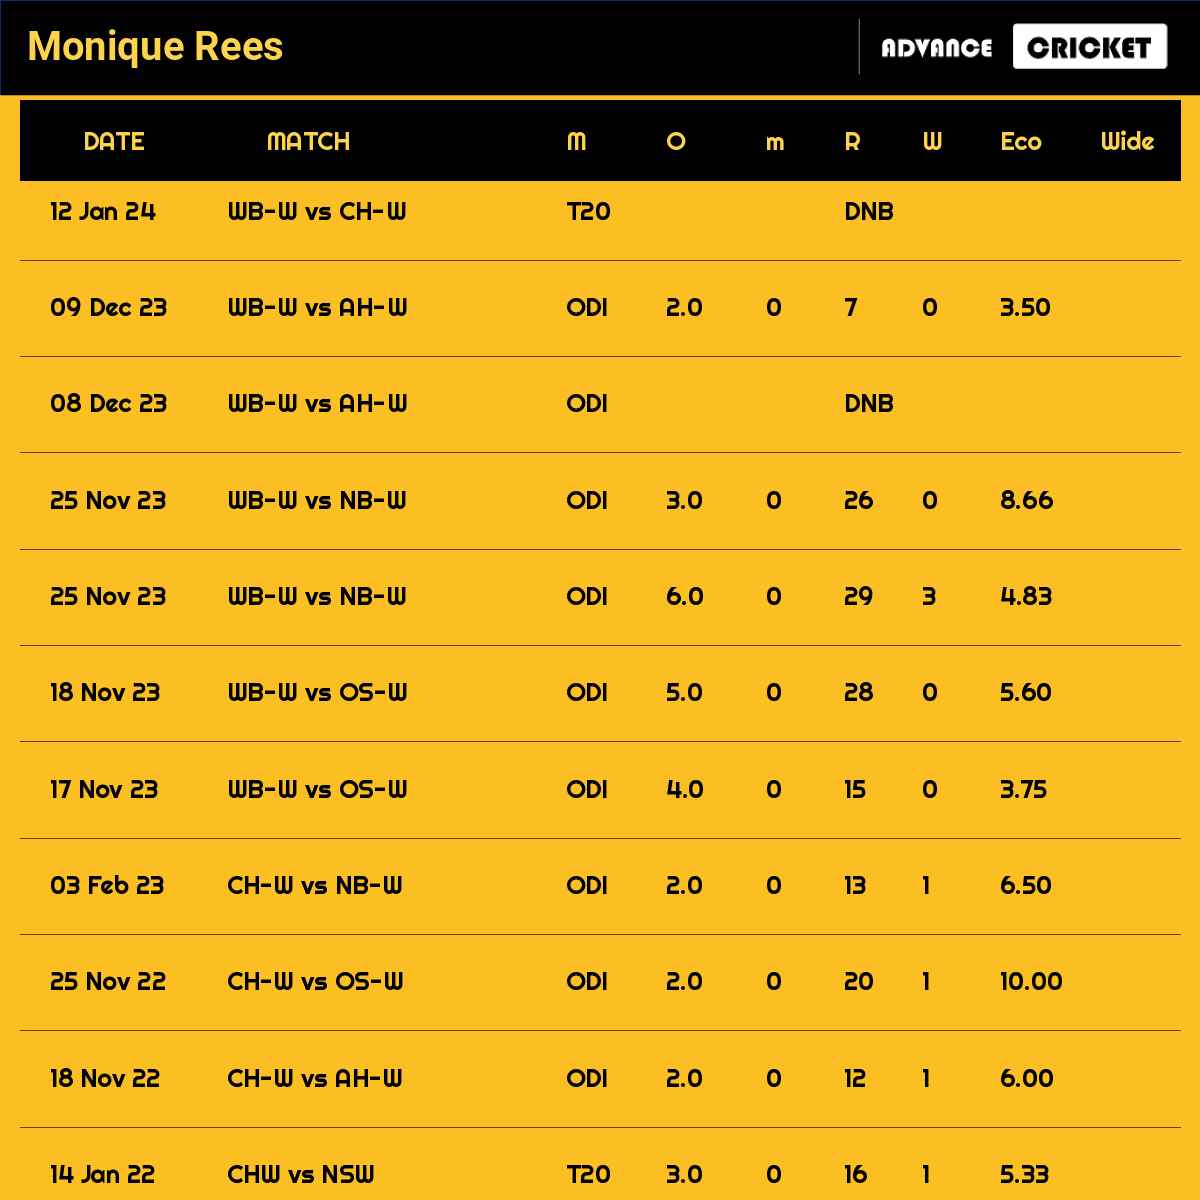 Monique Rees recent matches